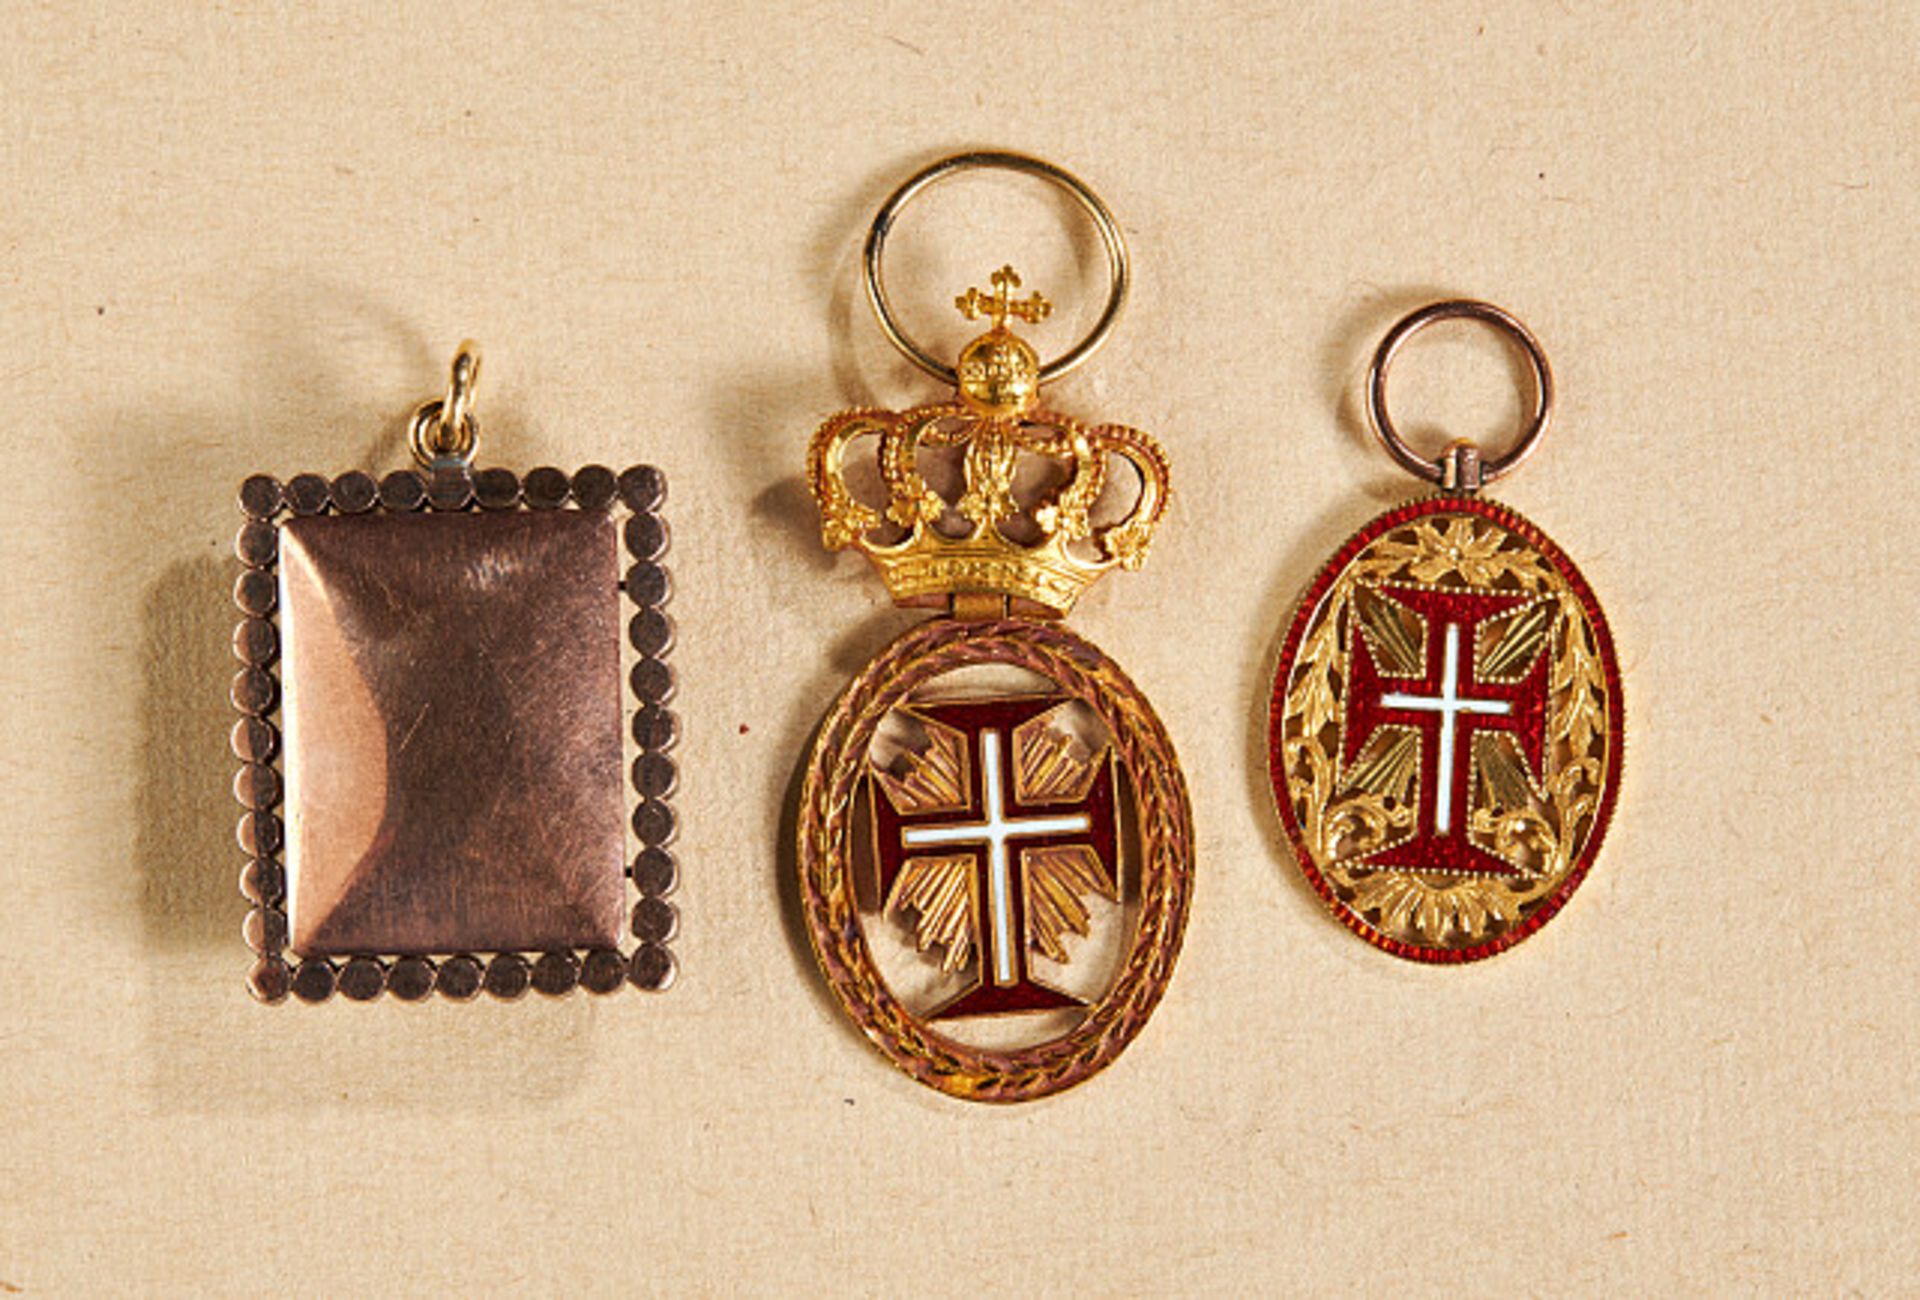 Ausländische Orden & Ehrenzeichen - Portugal : Christus Ordensdekoration mit Krone. - Bild 2 aus 2